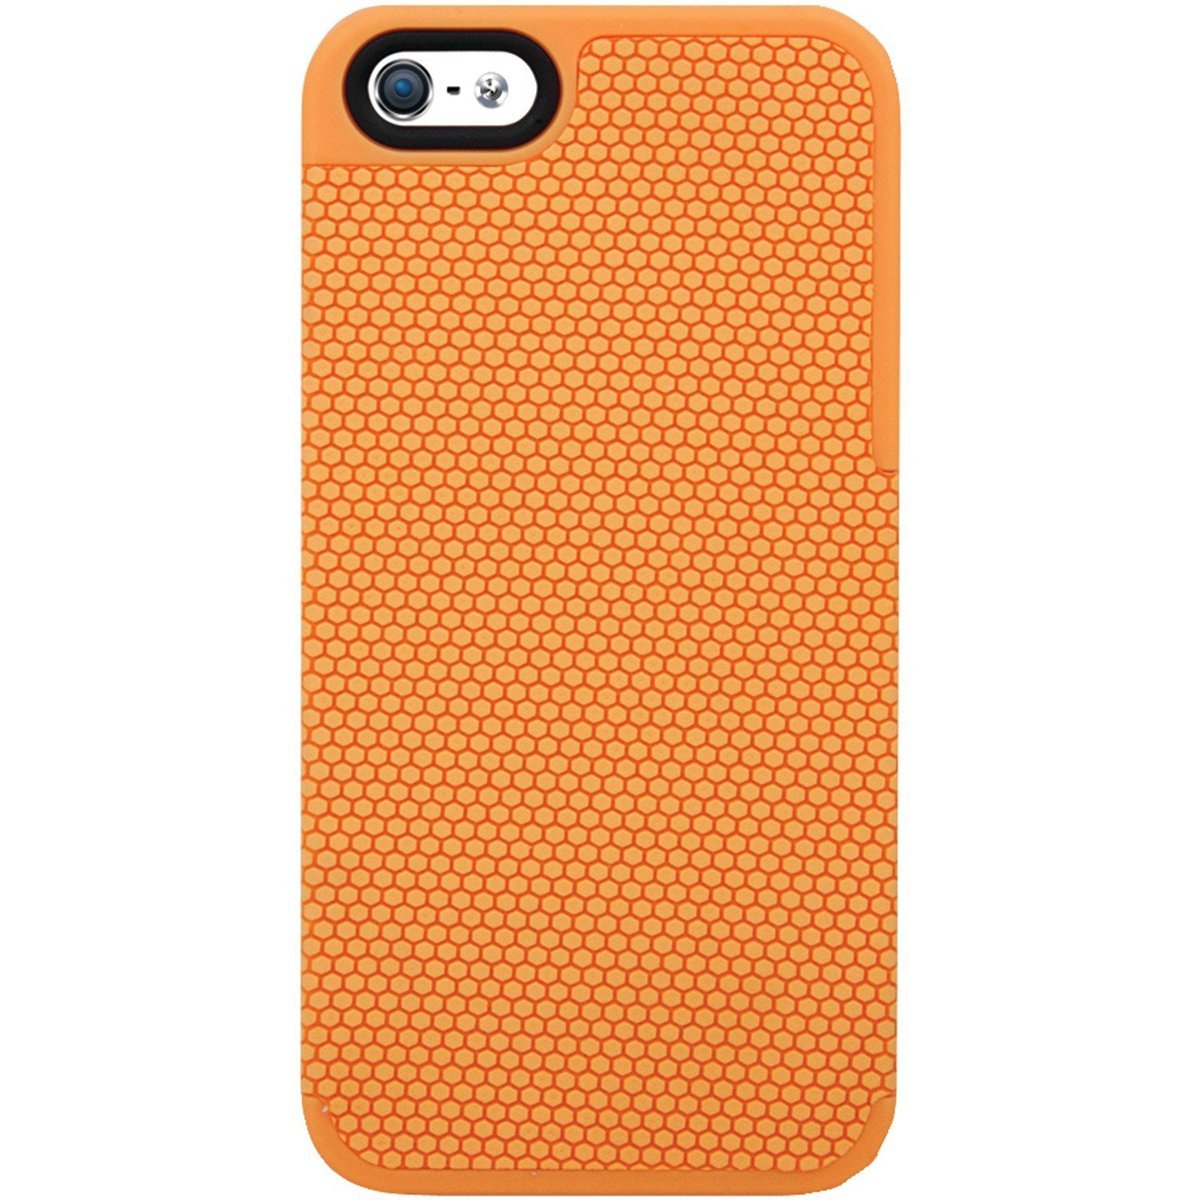 Carcasa Honeycomb Iphone Se 5/5S o Isound-5325